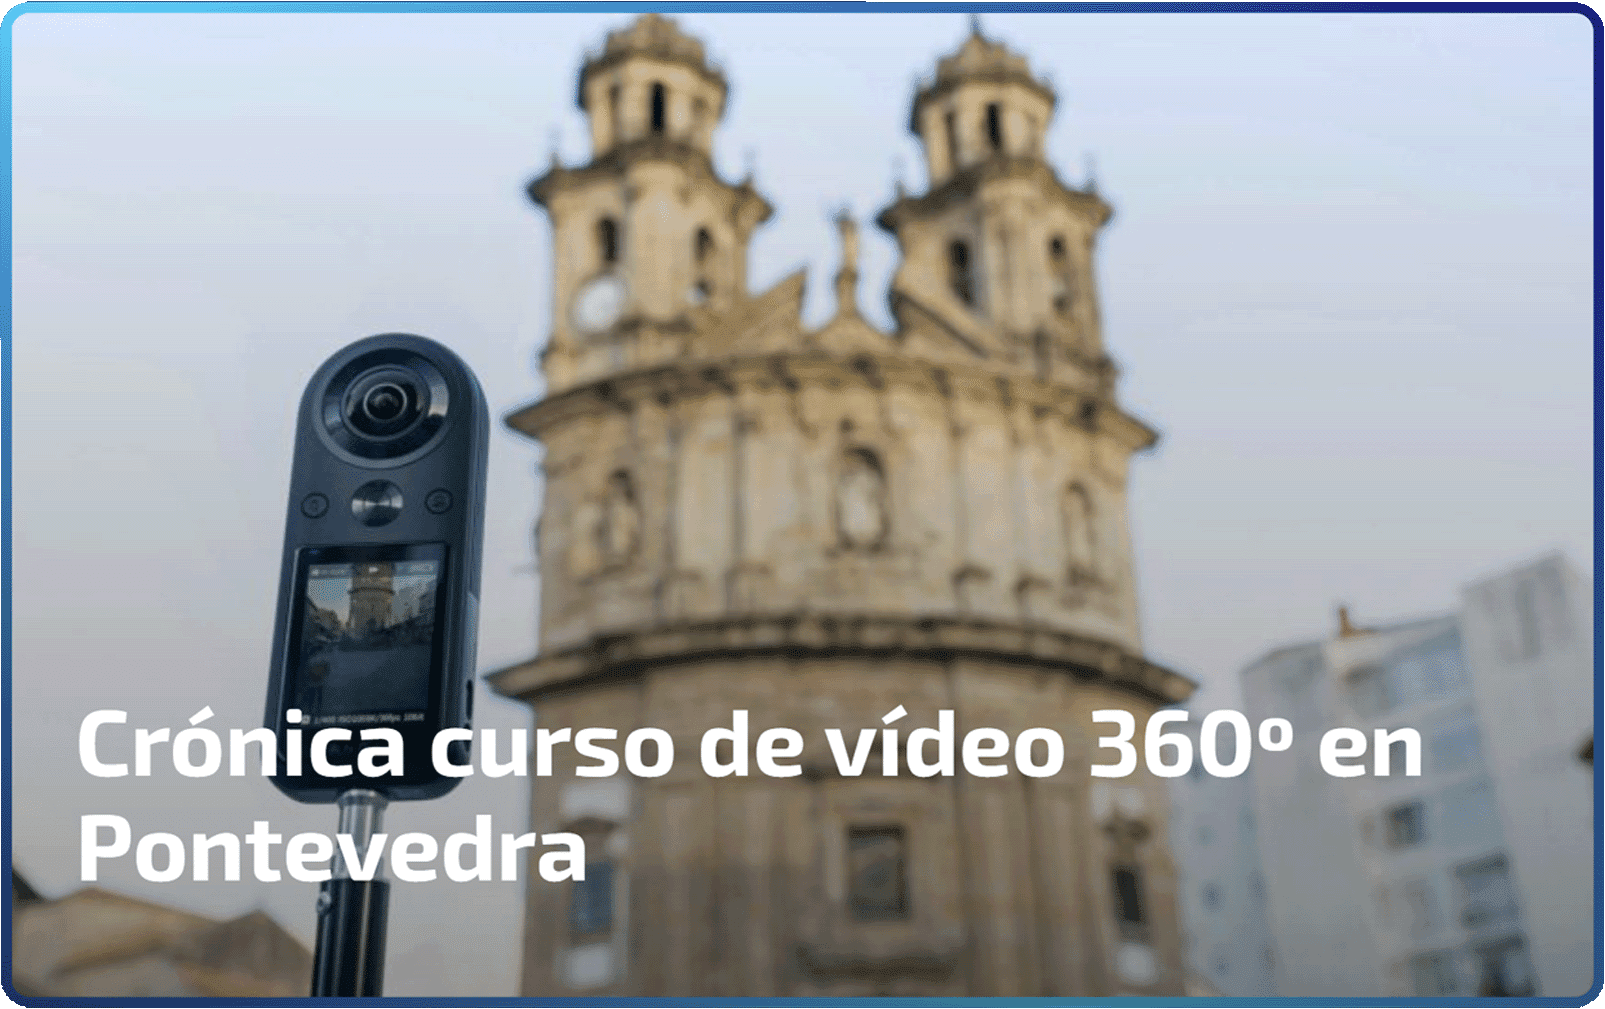 Crónica curso de video 360 en Pontevedra